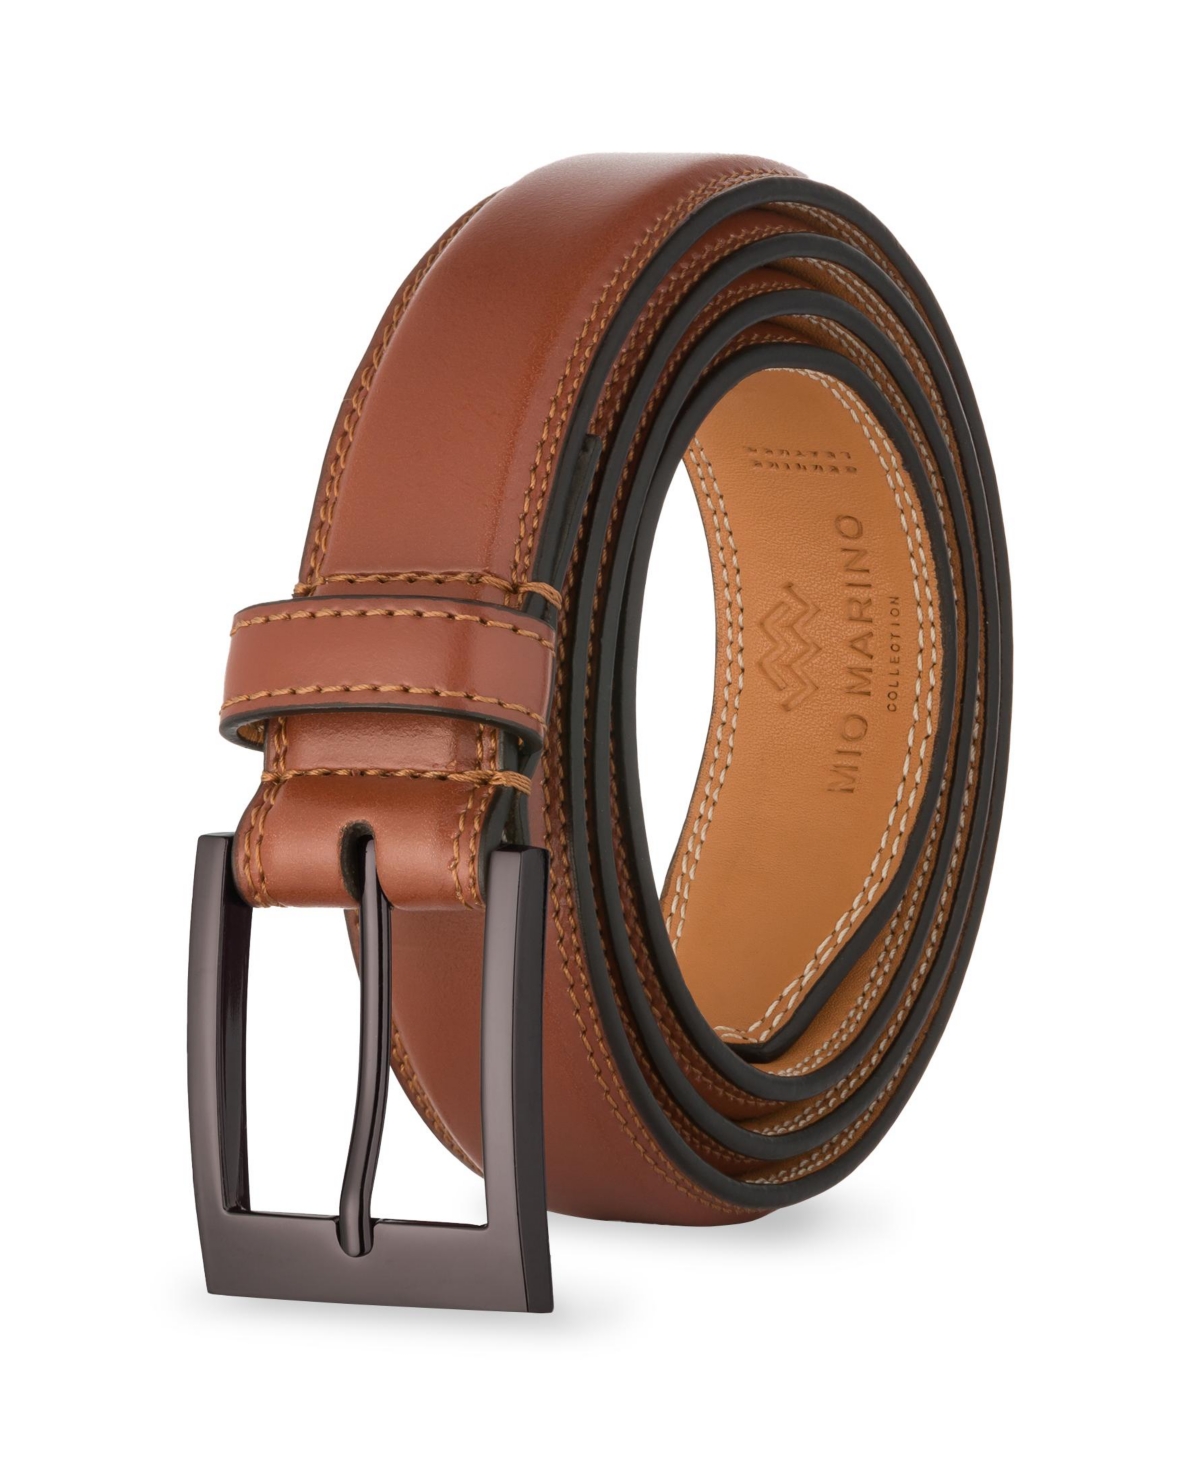 Men's Single Prong Buckle Leather Belt - Ebon